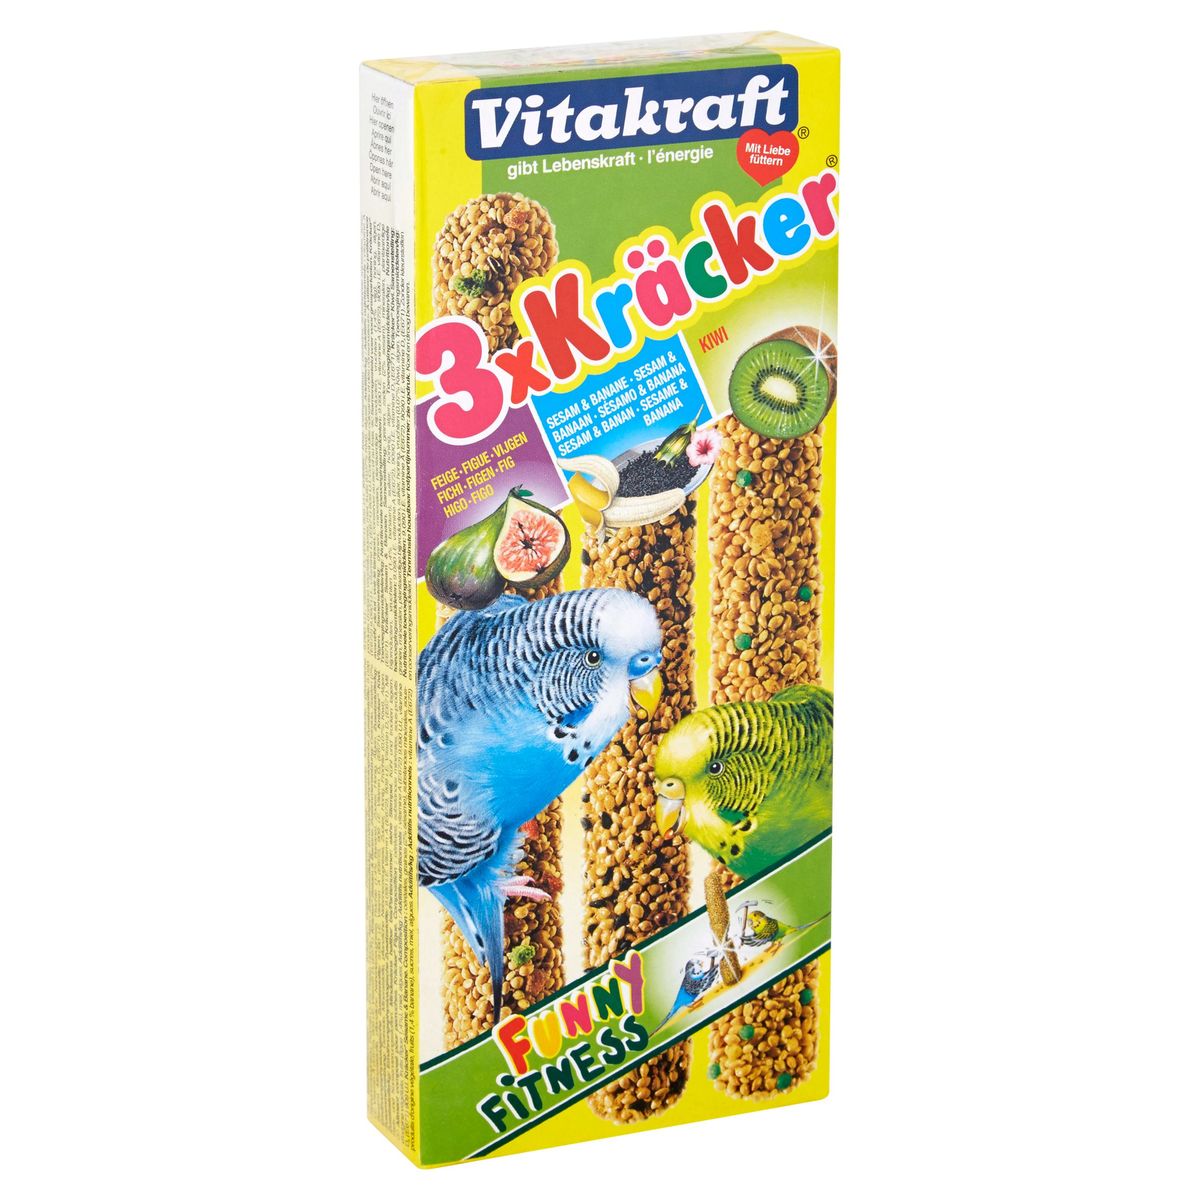 Vitakraft 3x Crackers Vijgen, Sesam & banaan, Kiwi voor parkieten 90 g